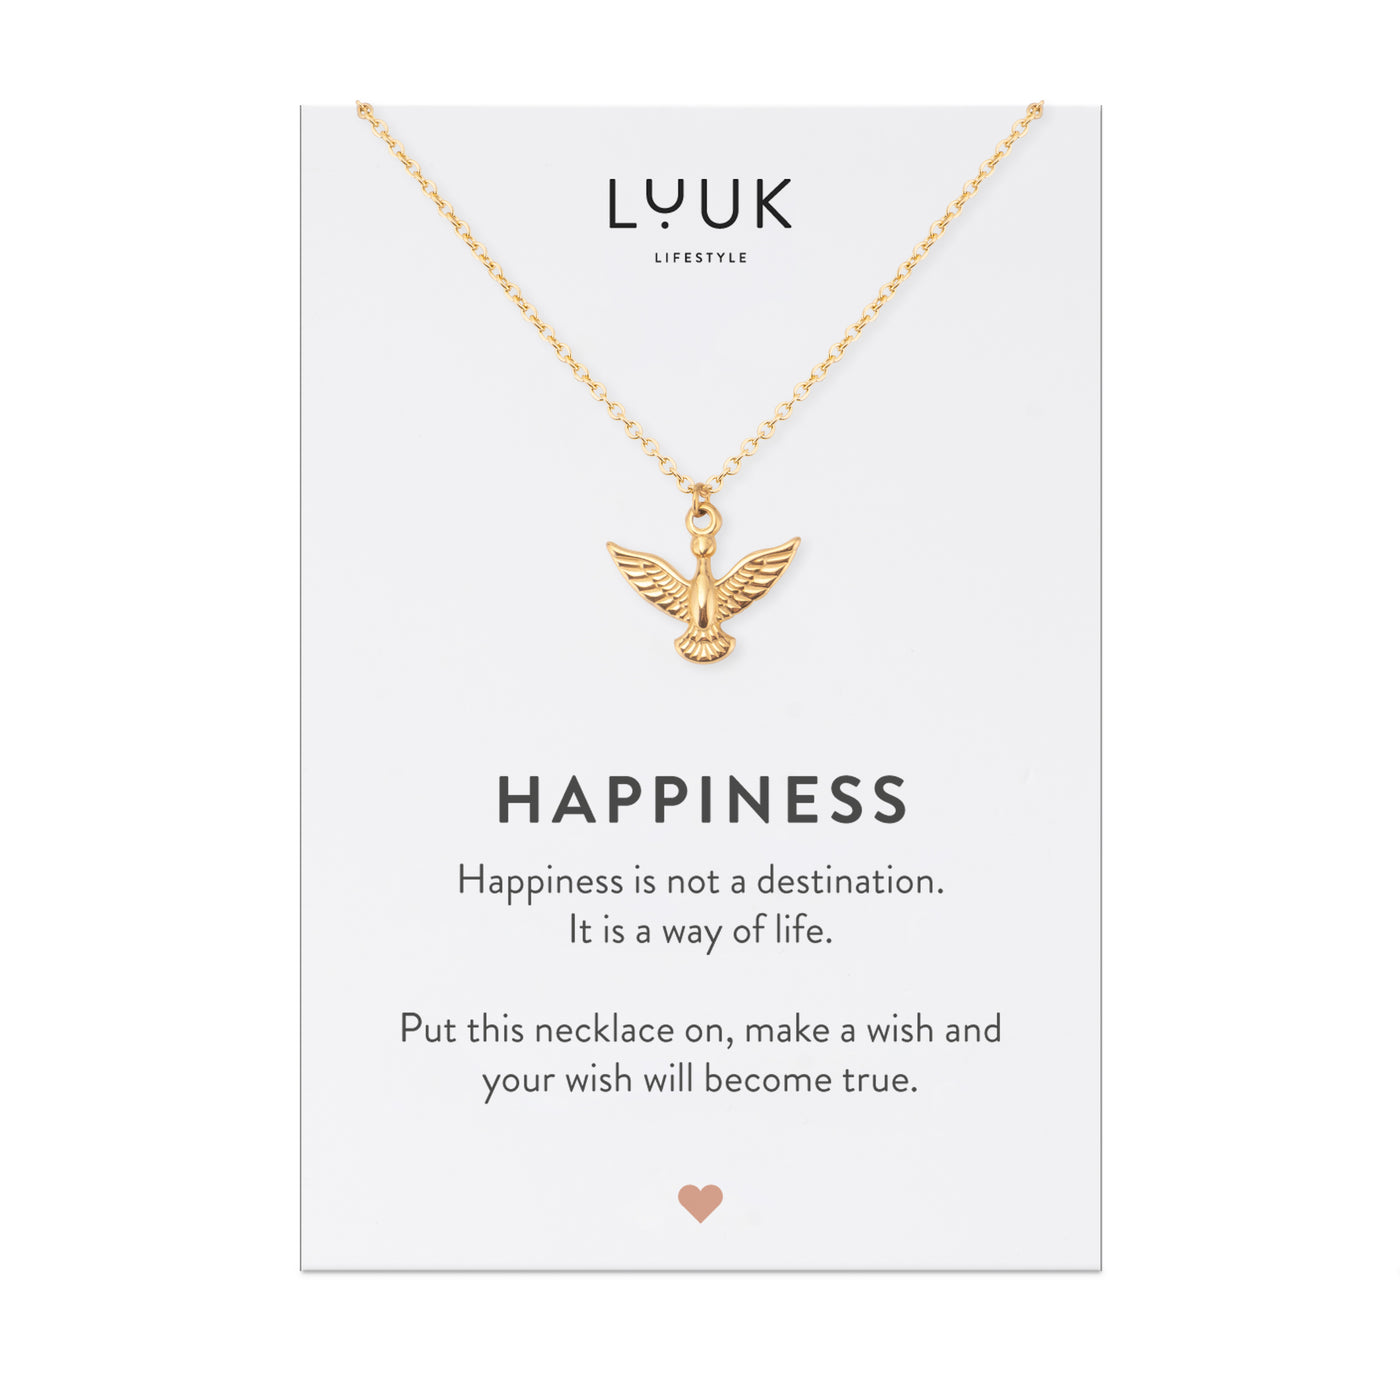 Goldene Halskette mit Adler Anhänger auf Happiness Karte von der Brand Luuk Lifestyle.